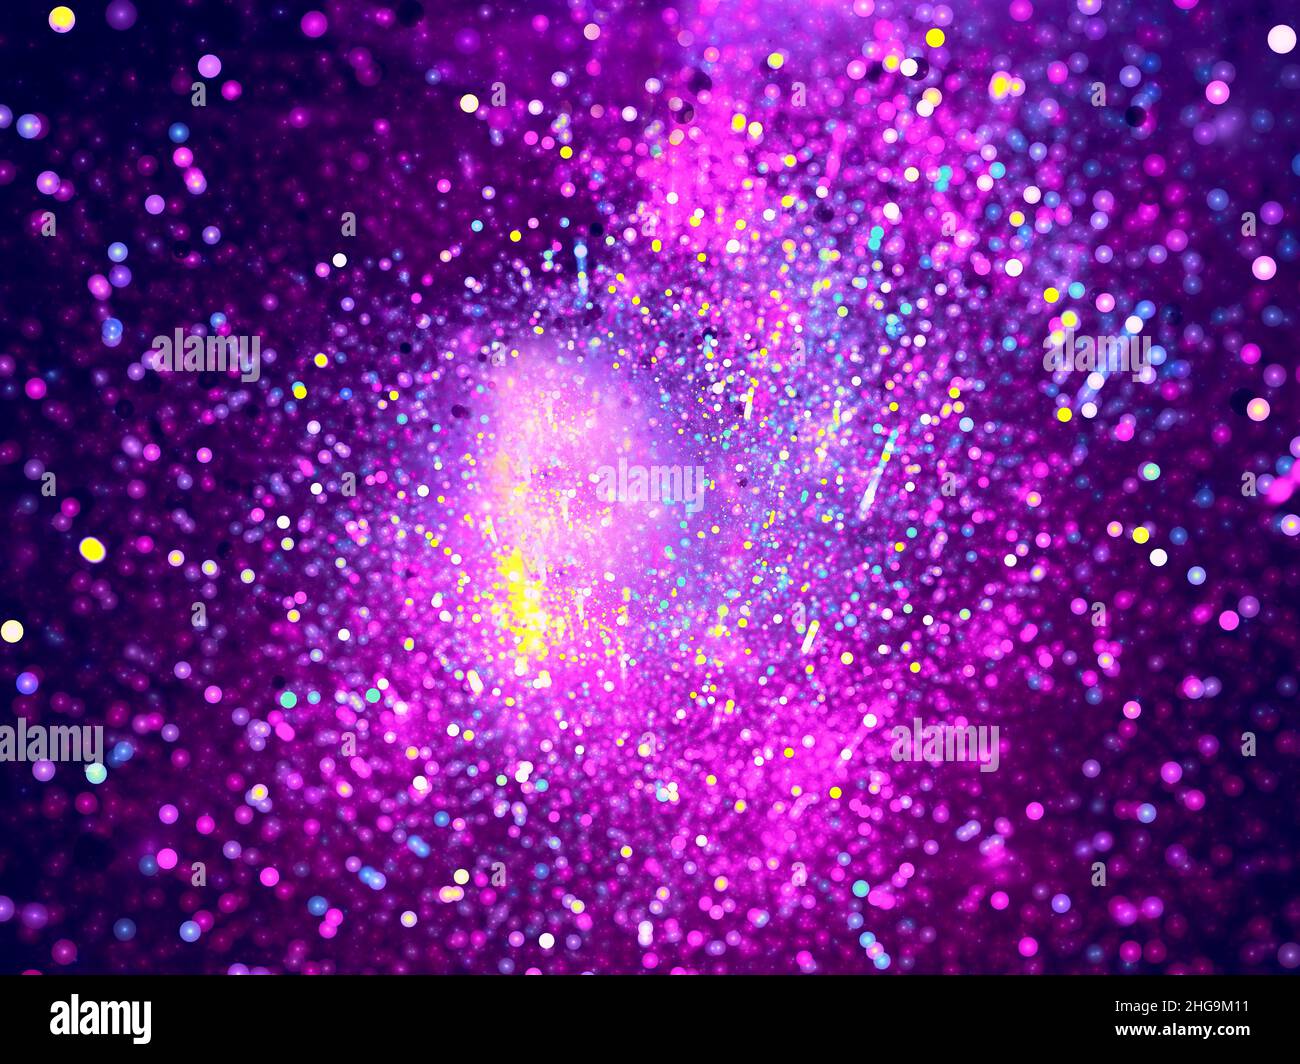 Arrière-plan violet flou avec bokeh de petites boules - illustration abstraite Banque D'Images